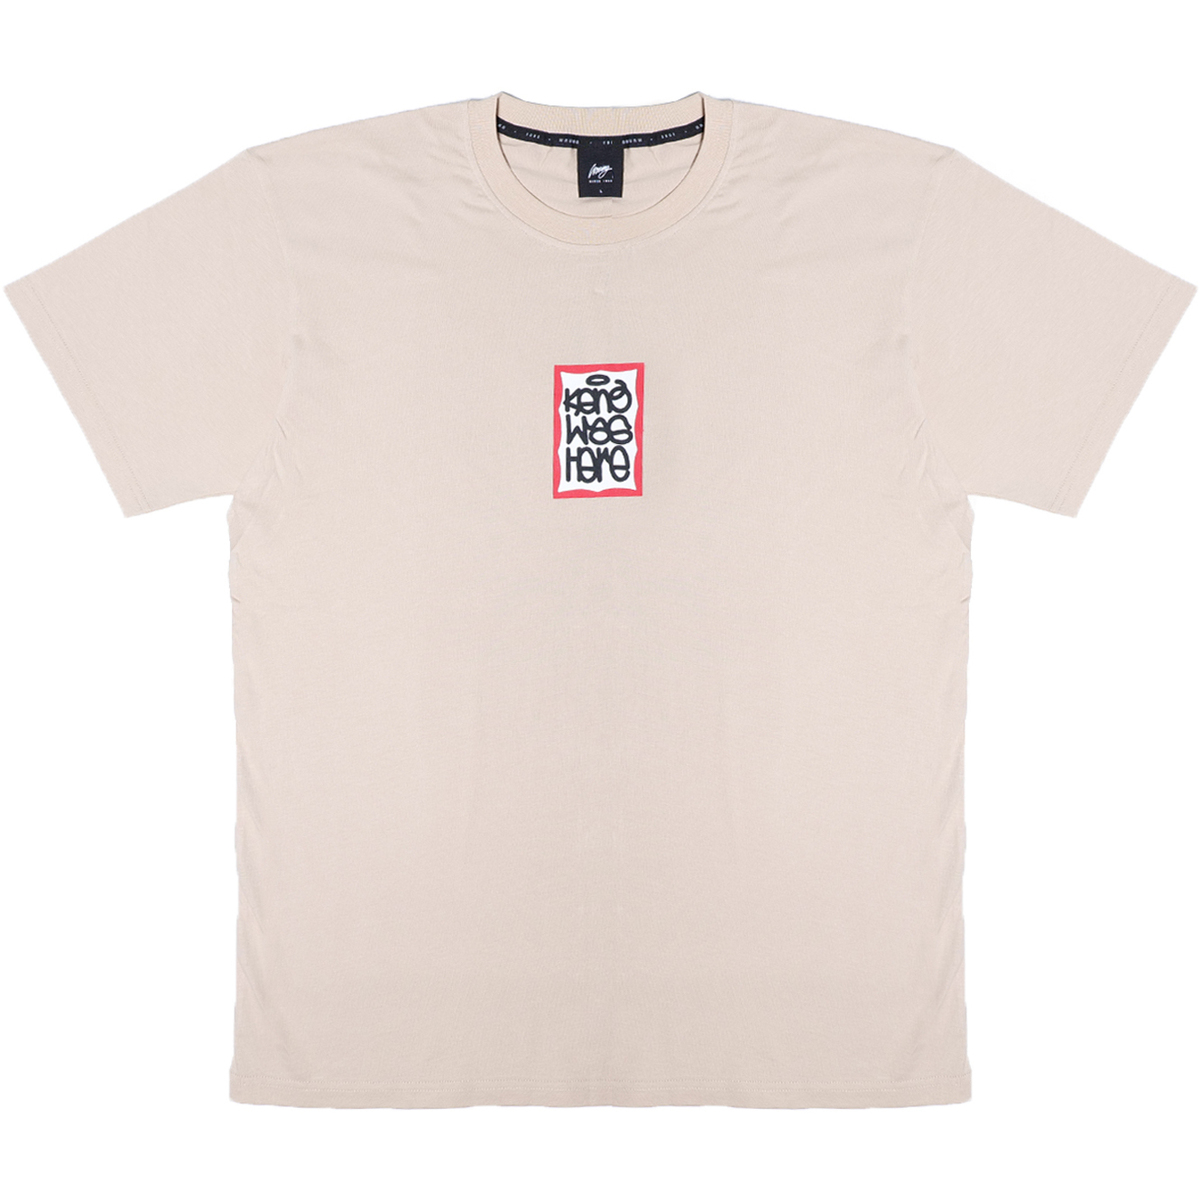 textil Camisetas manga corta Wrung T-shirt  Keno Amarillo